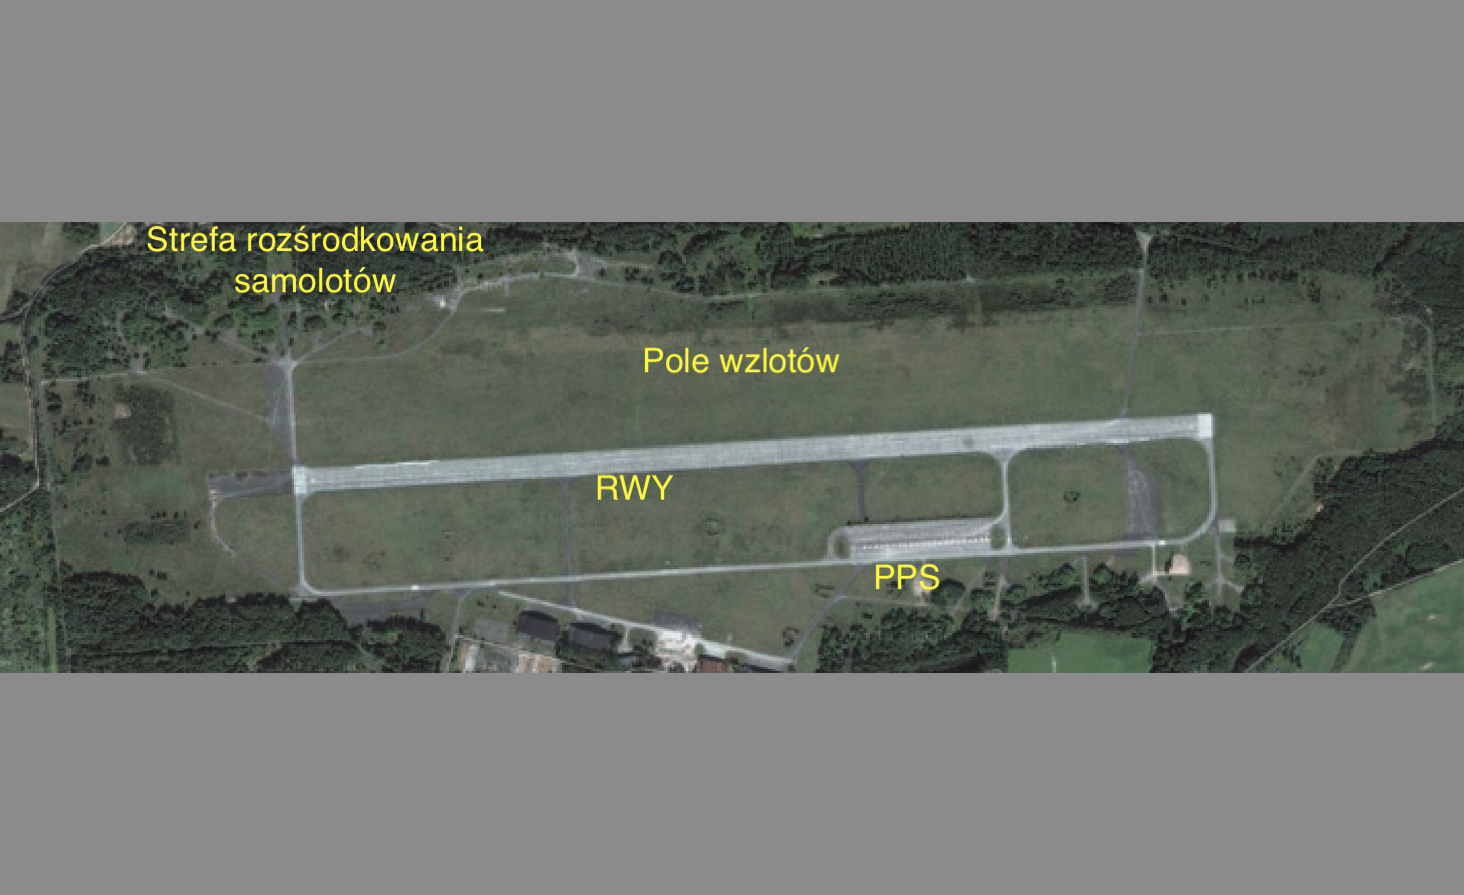 Typowe lotnisko wojskowe w 70-latach. 2010 rok. Praca Karol Placha Hetman